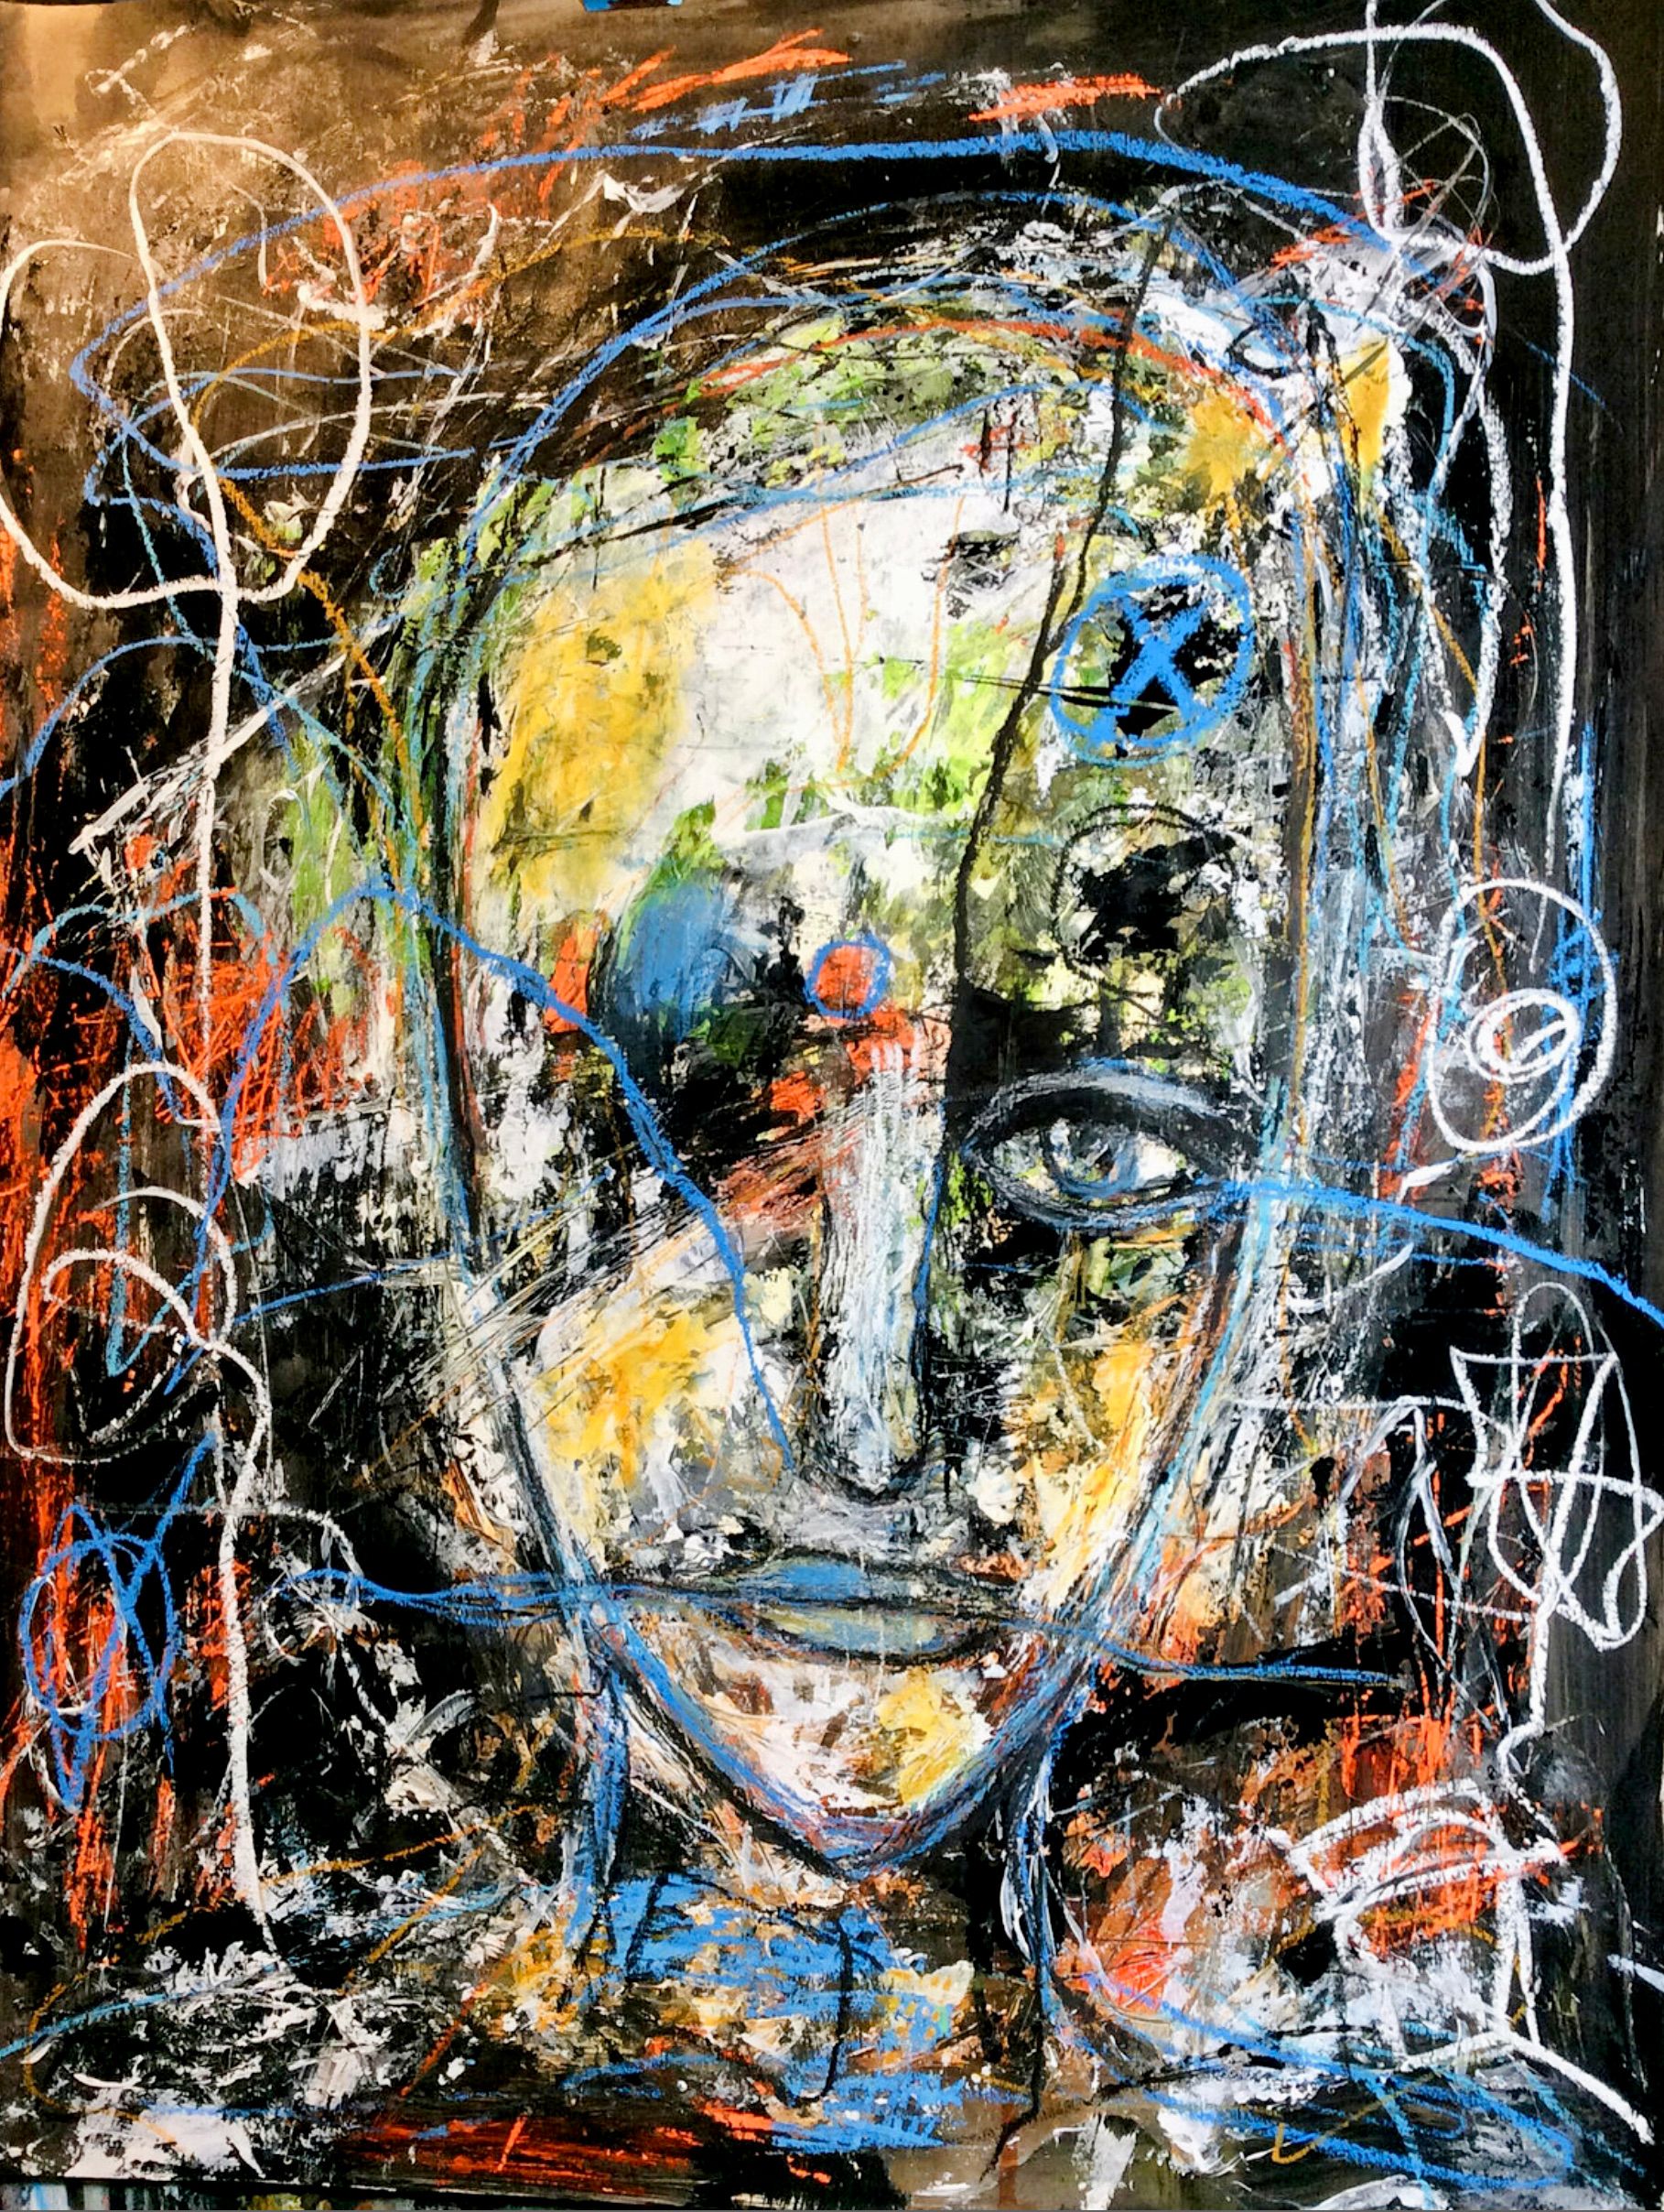 Il ritratto semi-astratto ed espressivo "Spuren 1" di Ilona Schmidt mostra un volto di donna. I colori nero, arancione, rosso e blu dominano questo dipinto.